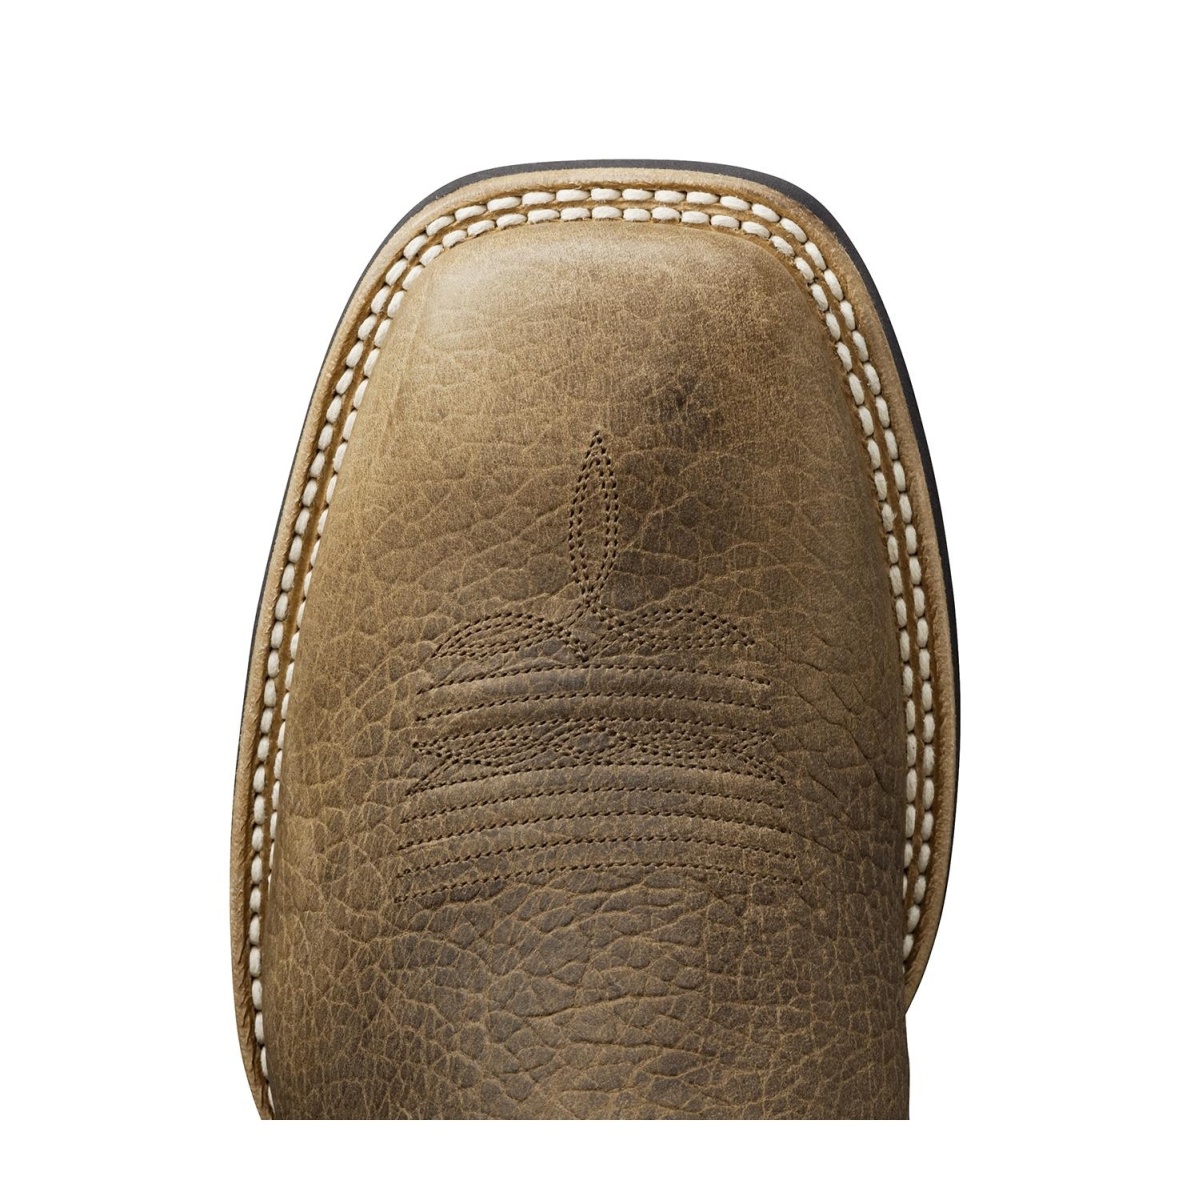 Ariat Men's Boots 'Quickdraw' Tumbled Bark/Beige 10002224 | Pakenham ...